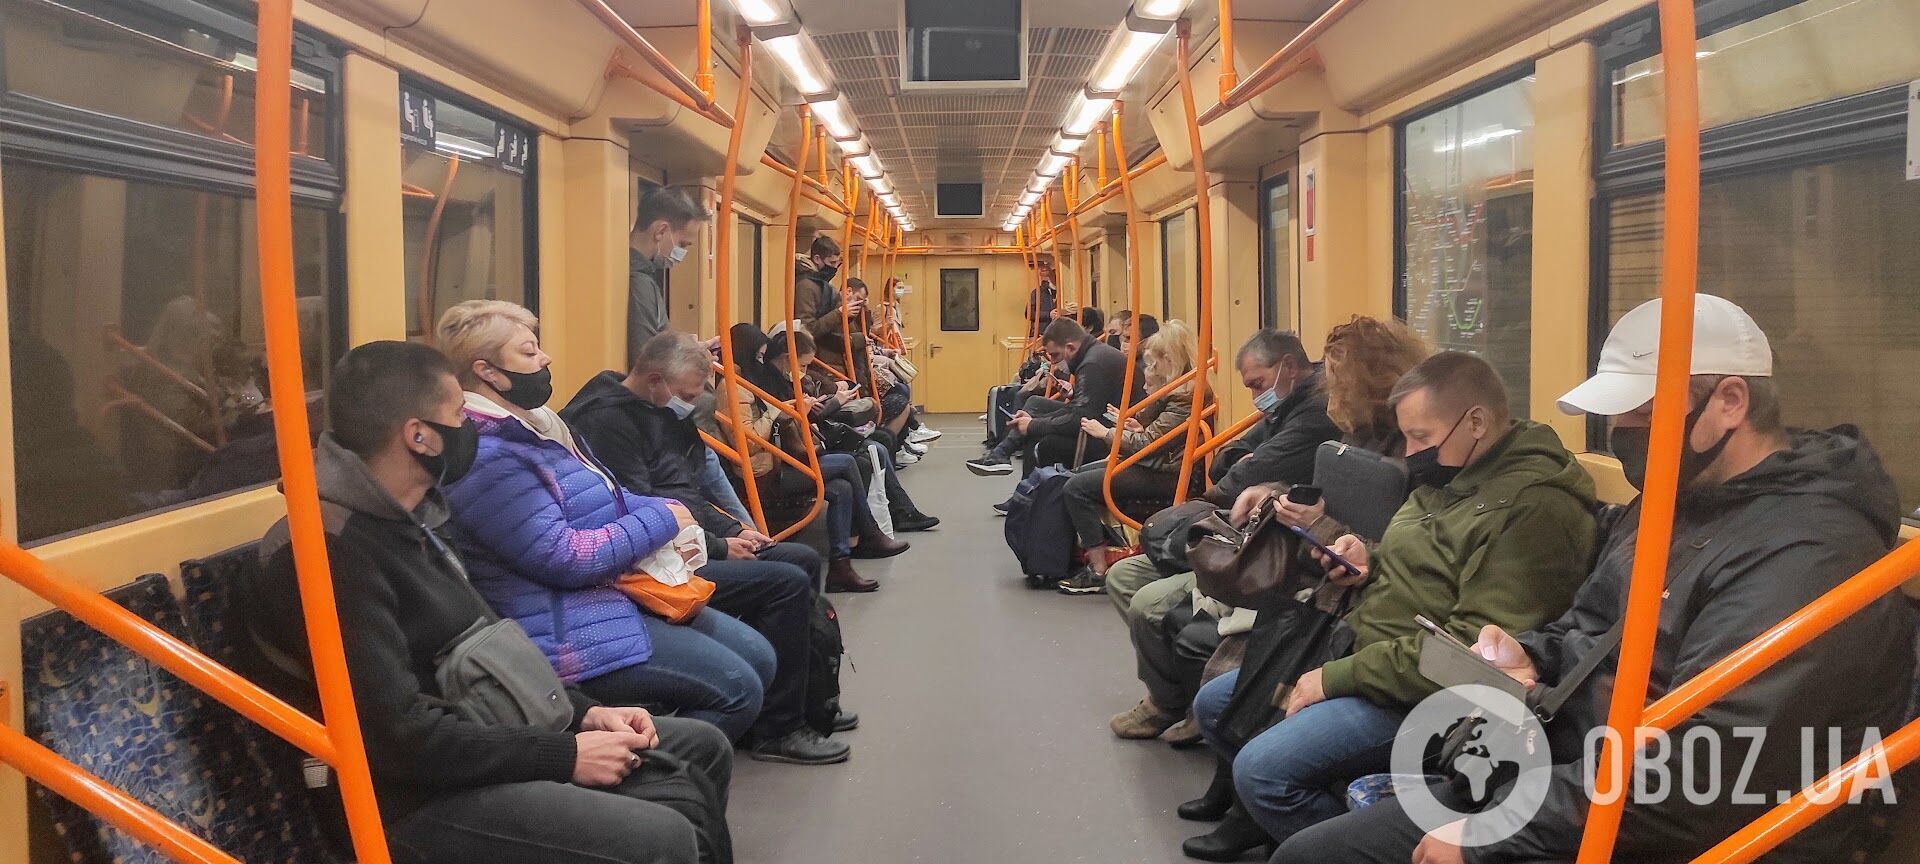 У метро кожен десятий пасажир не носить засоби захисту.